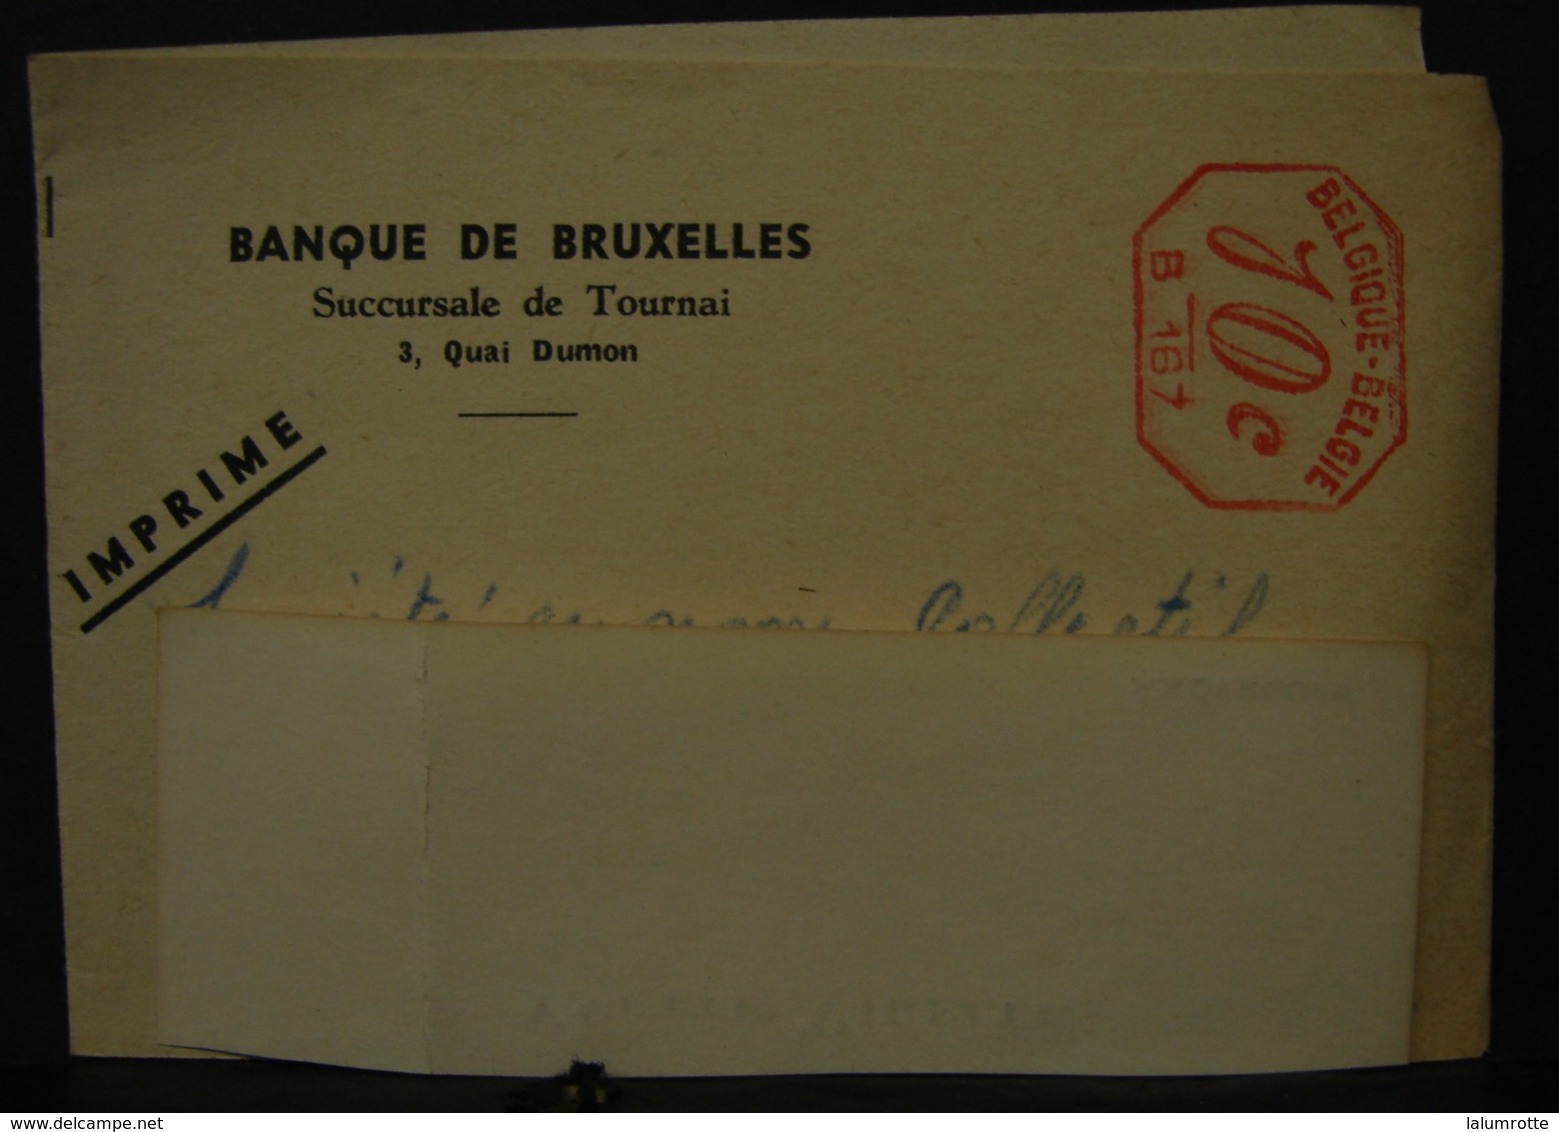 LetDoc. 322. Bandelette De Journaux Avec Un 10c B167 - ...-1959